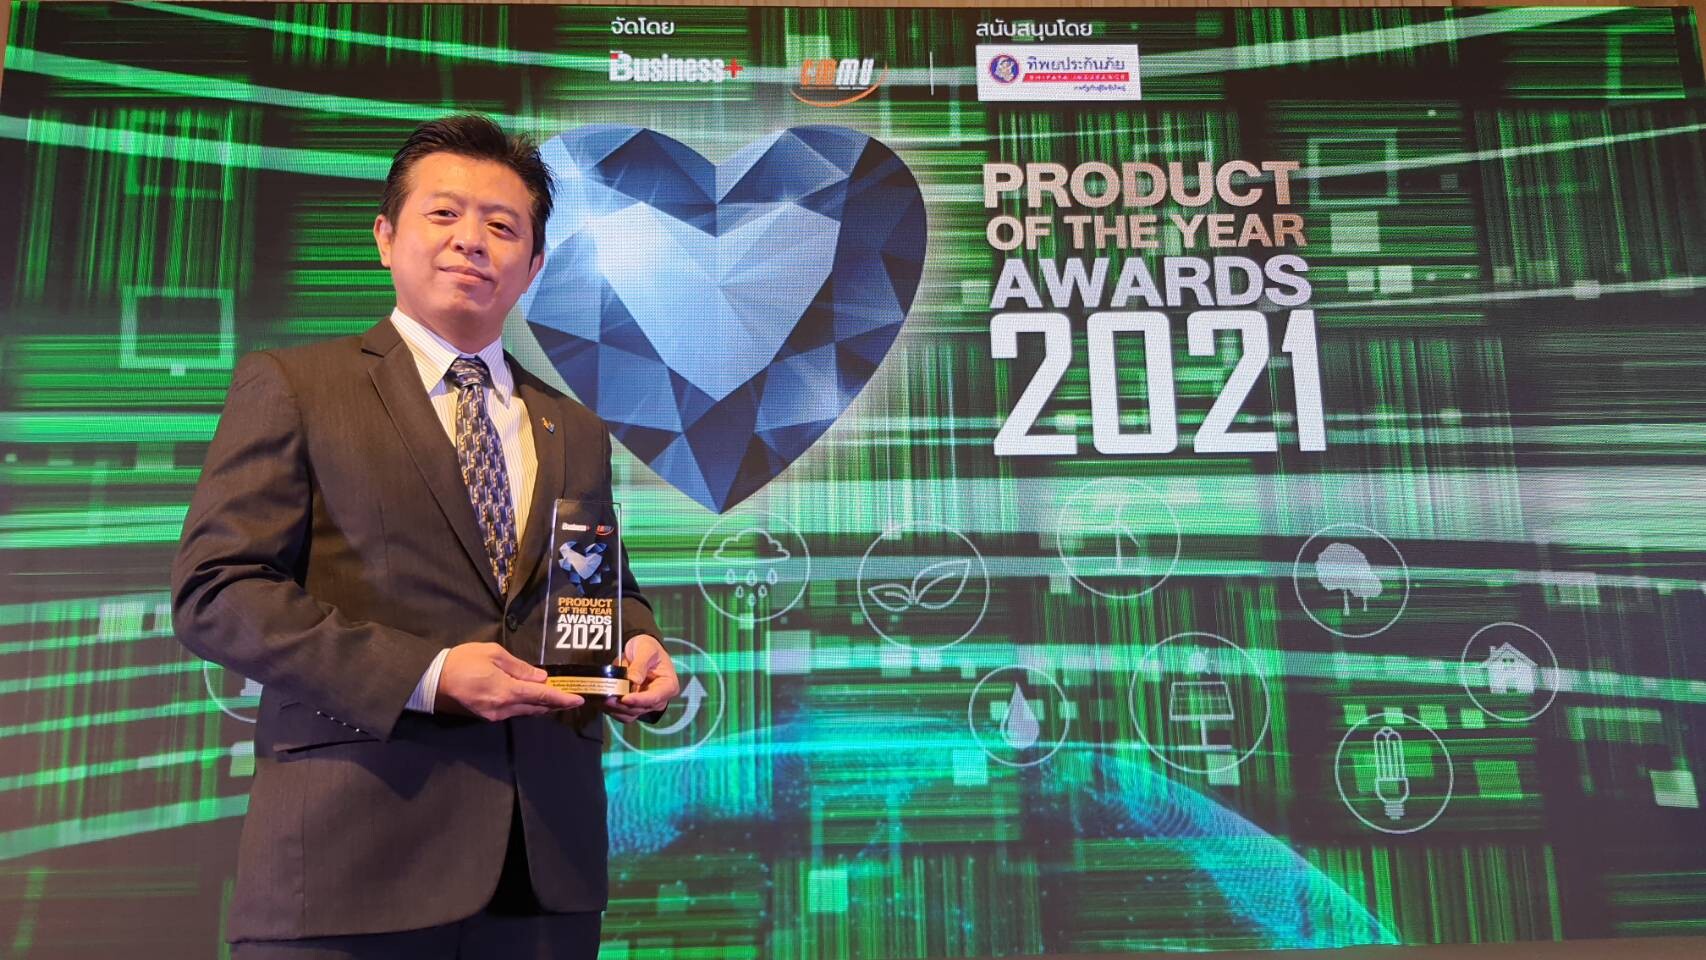 ไทยยูเนี่ยน ชู Blue Finance คว้ารางวัลจากเวที Business+ Product of the Year Awards 2021